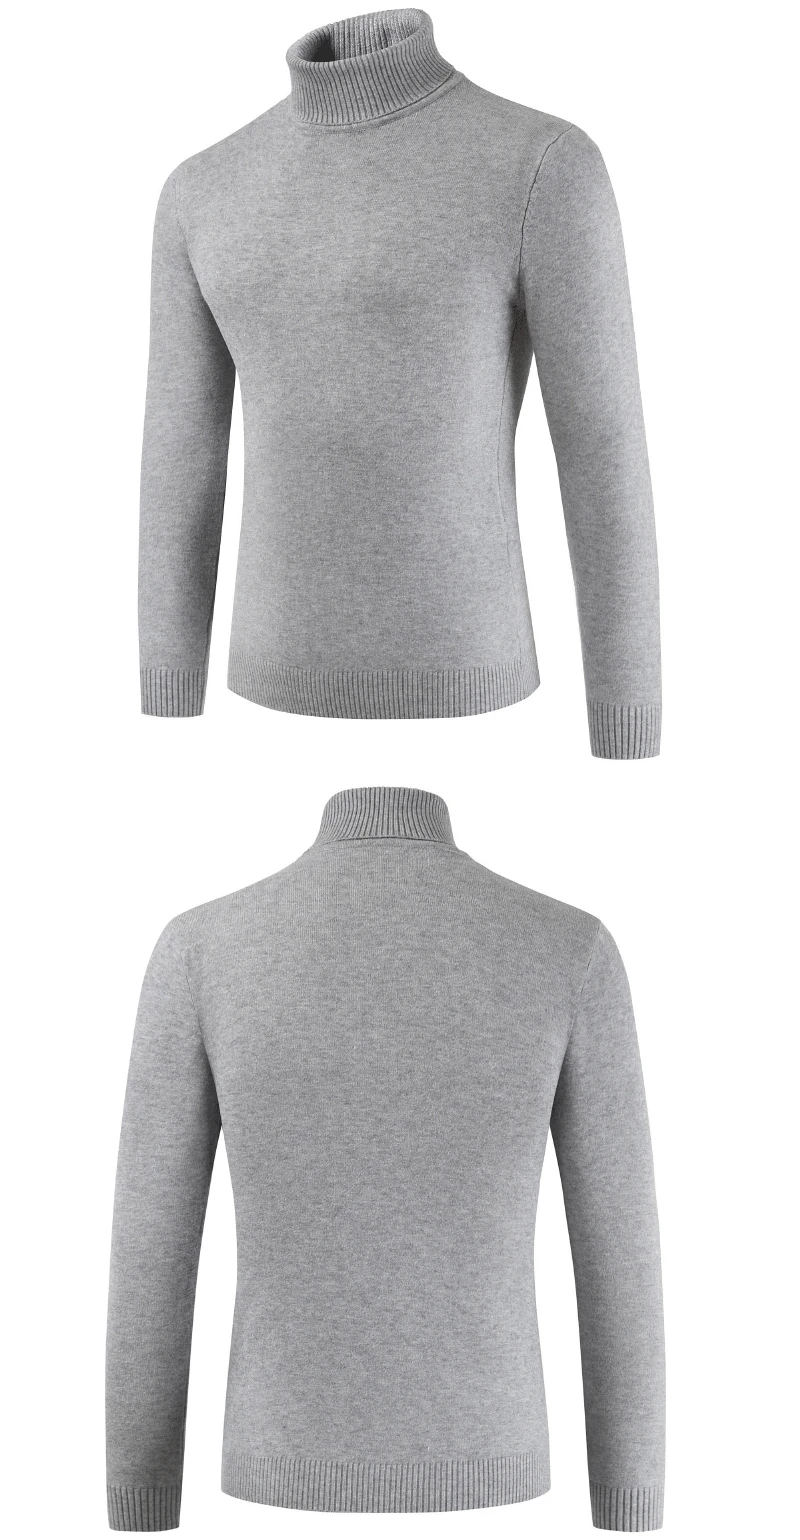 2019 новый бренд осень зима для мужчин свитер водолазка одноцветное цвет повседневное верхняя одежда мужской тонкий прилегающий вязаный